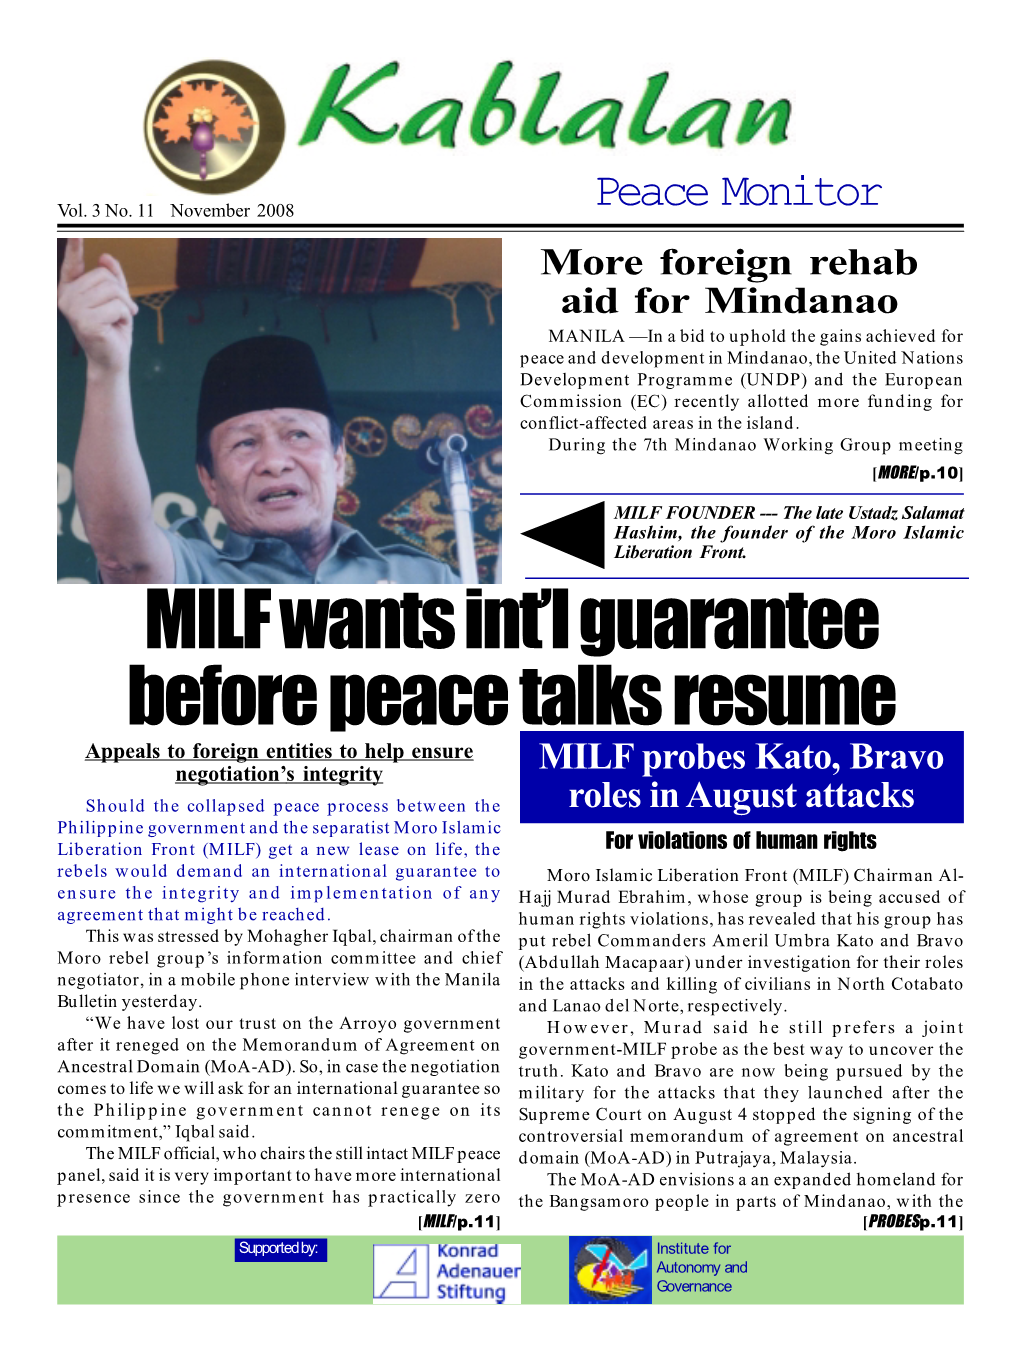 MILF Wants Int'l Guarantee Before Peace Talks Resume